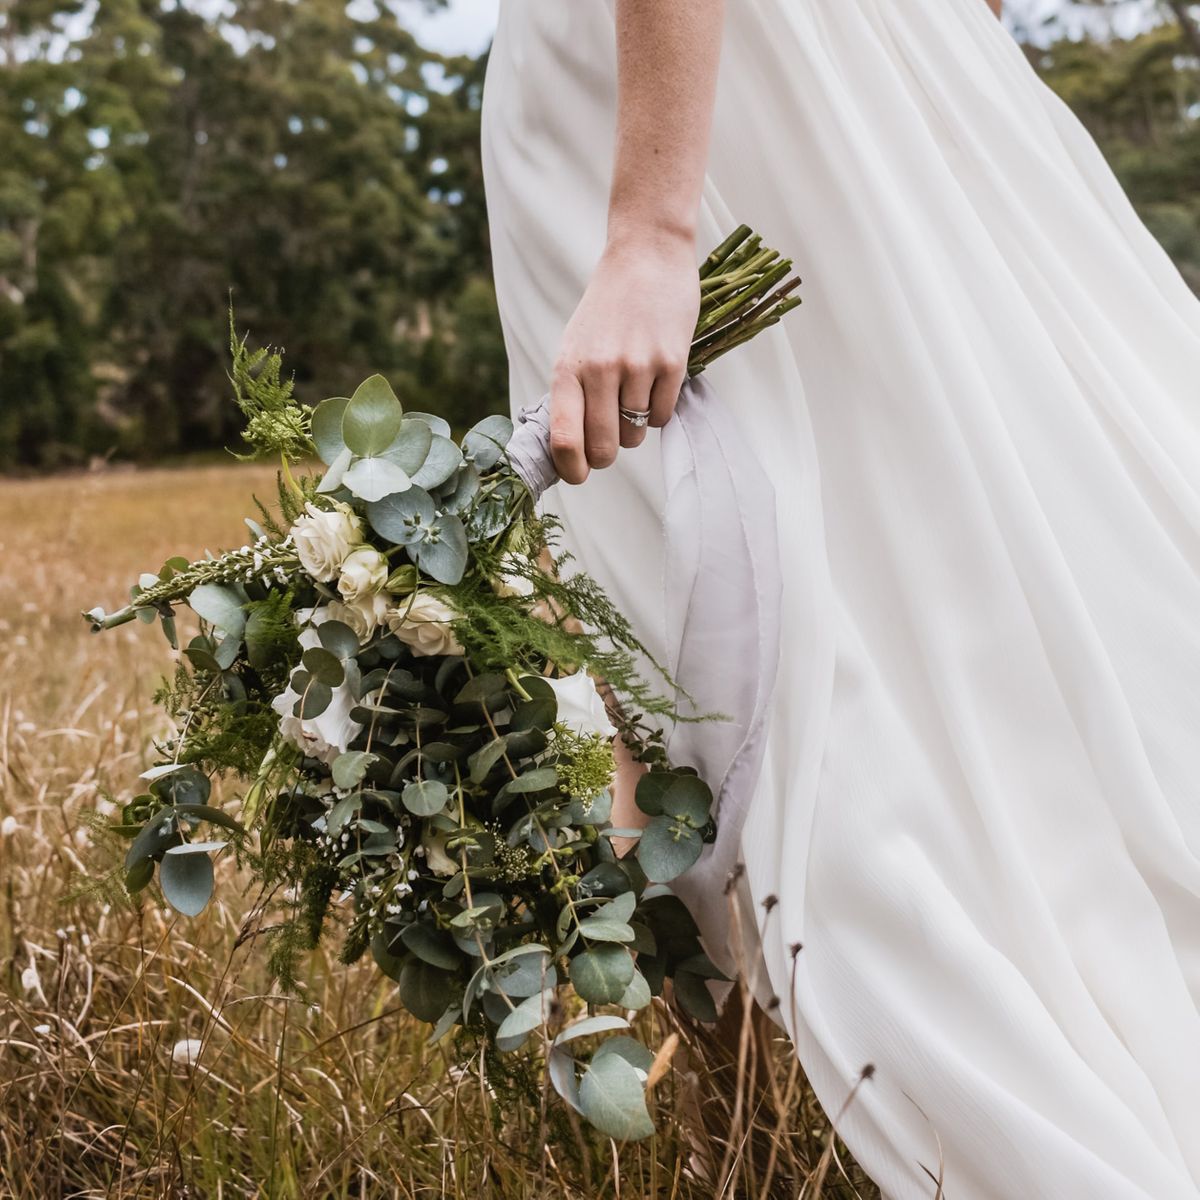 Brautstrauß trocken - So erhaltet ihr eure Erinnerung an euren schönsten Tag